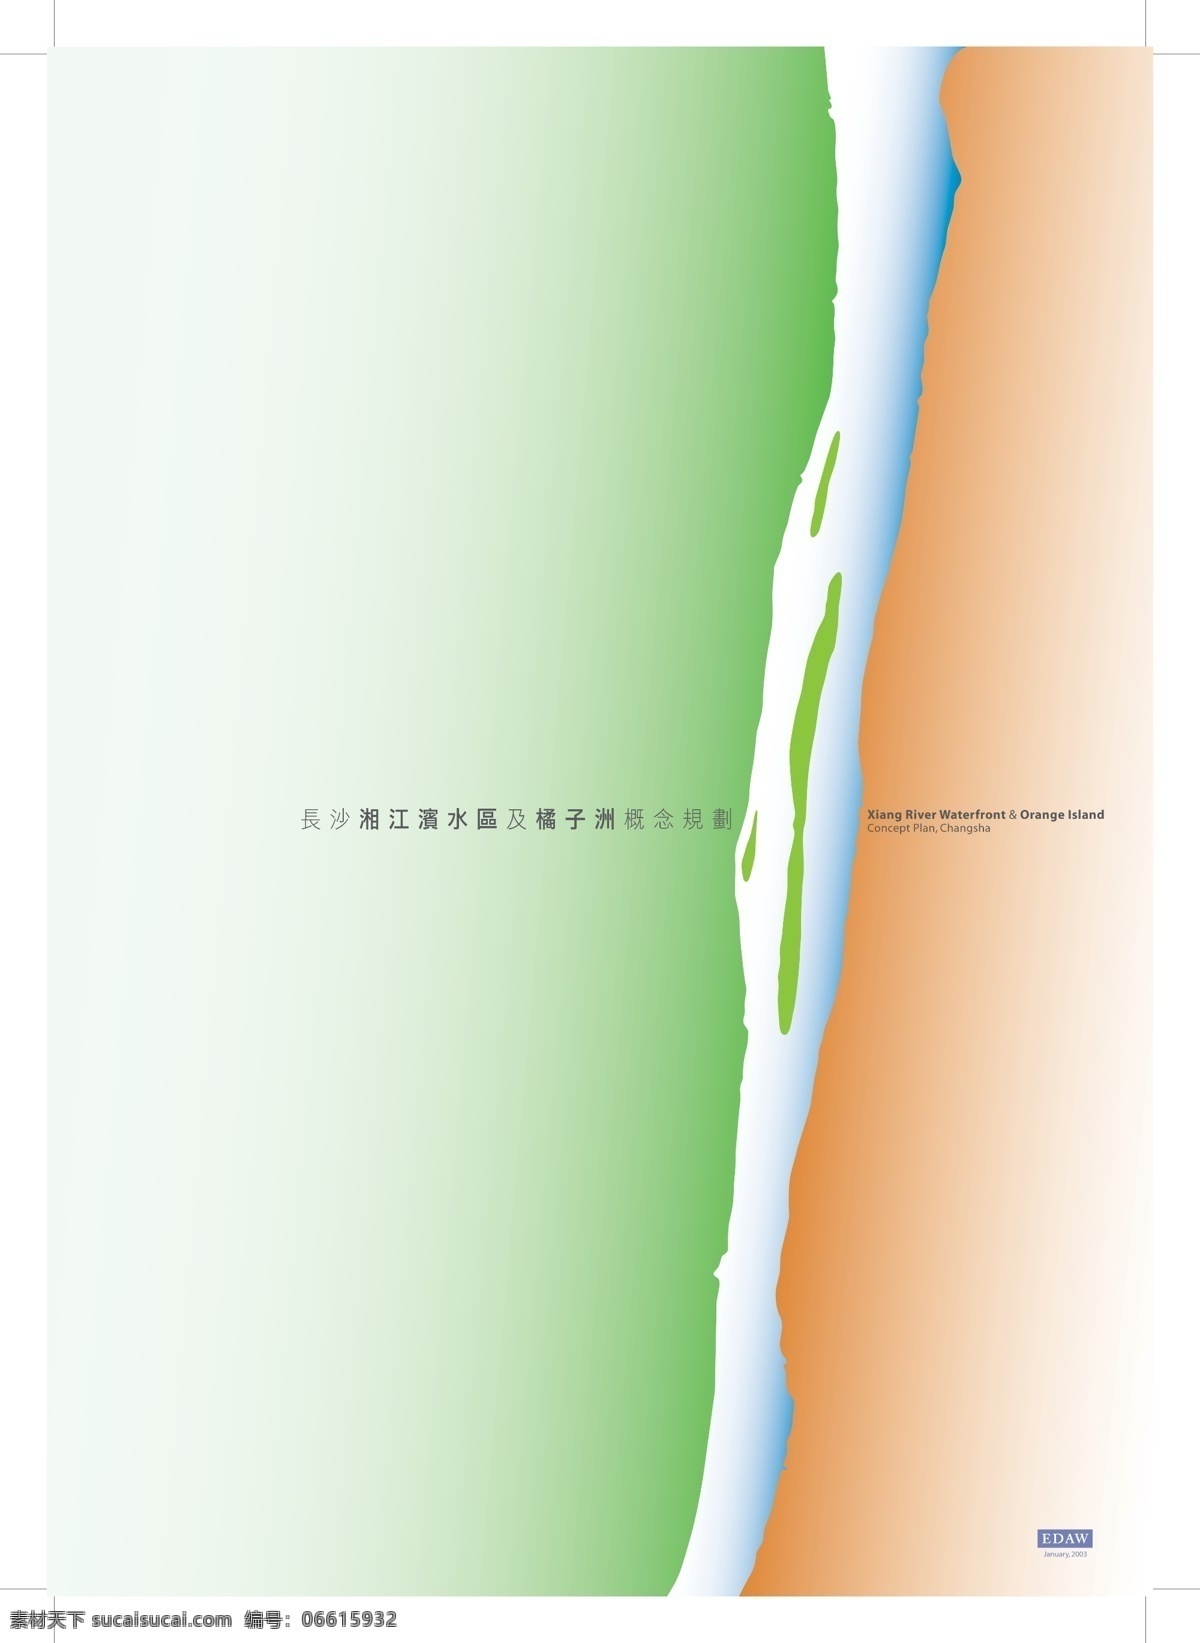 长沙 湘江 滨水区 橘子洲 景观 概念设计 eadw 园林 方案文本 滨 水 规划 白色